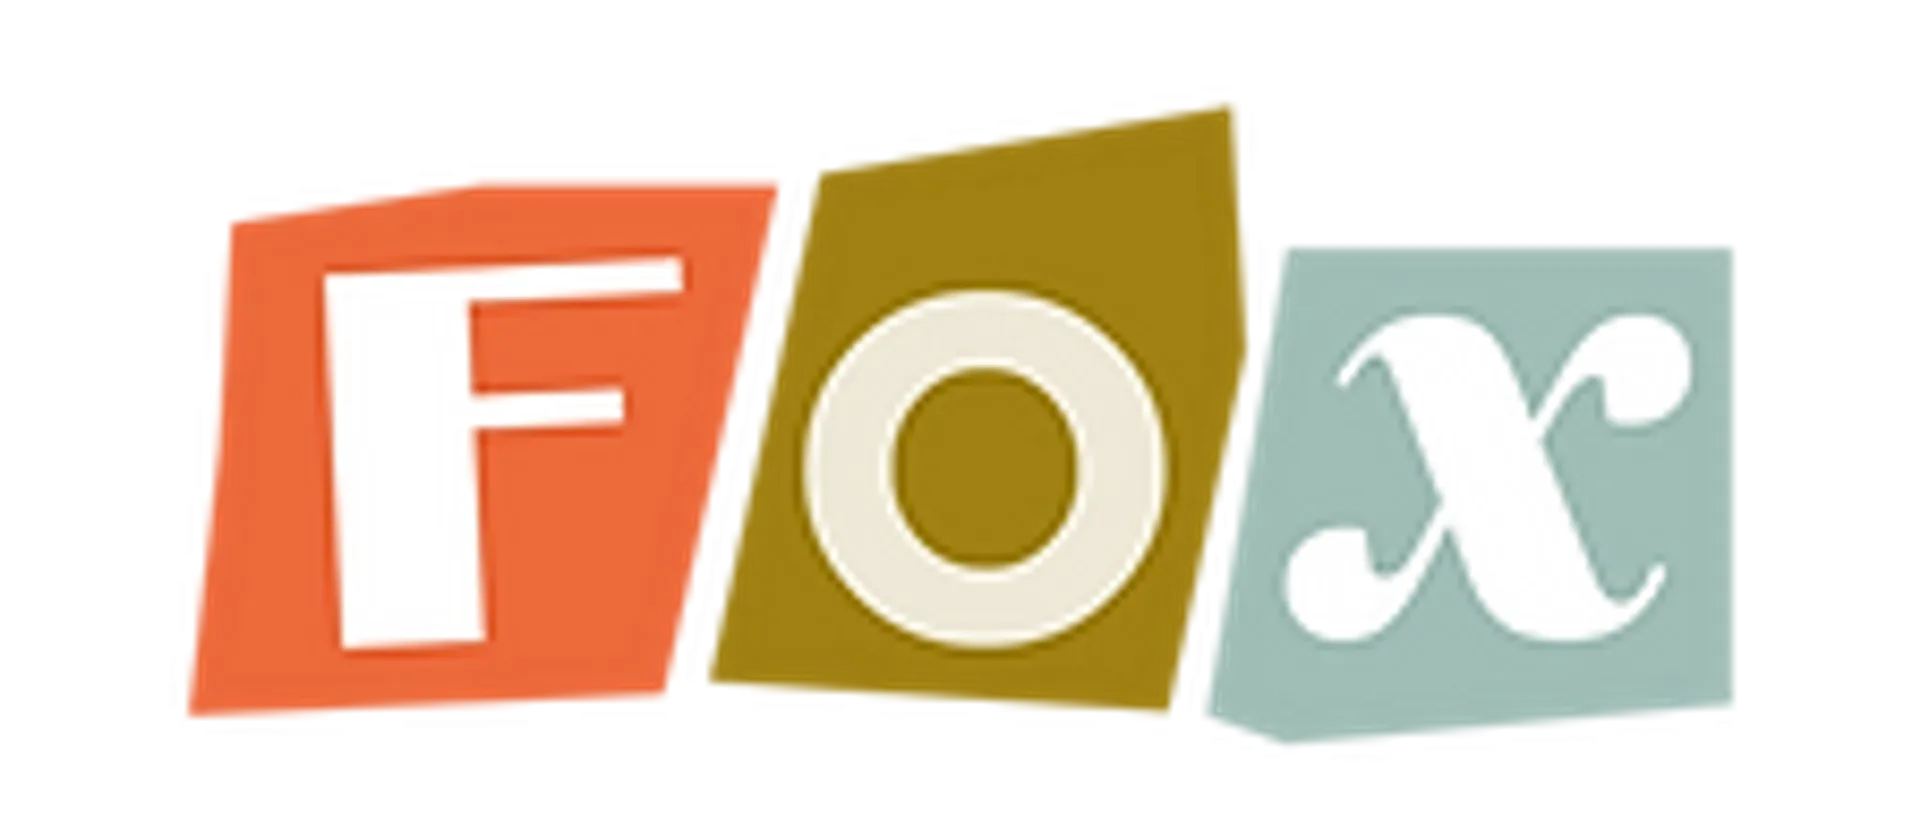 FOX + logo in de folder van deze week